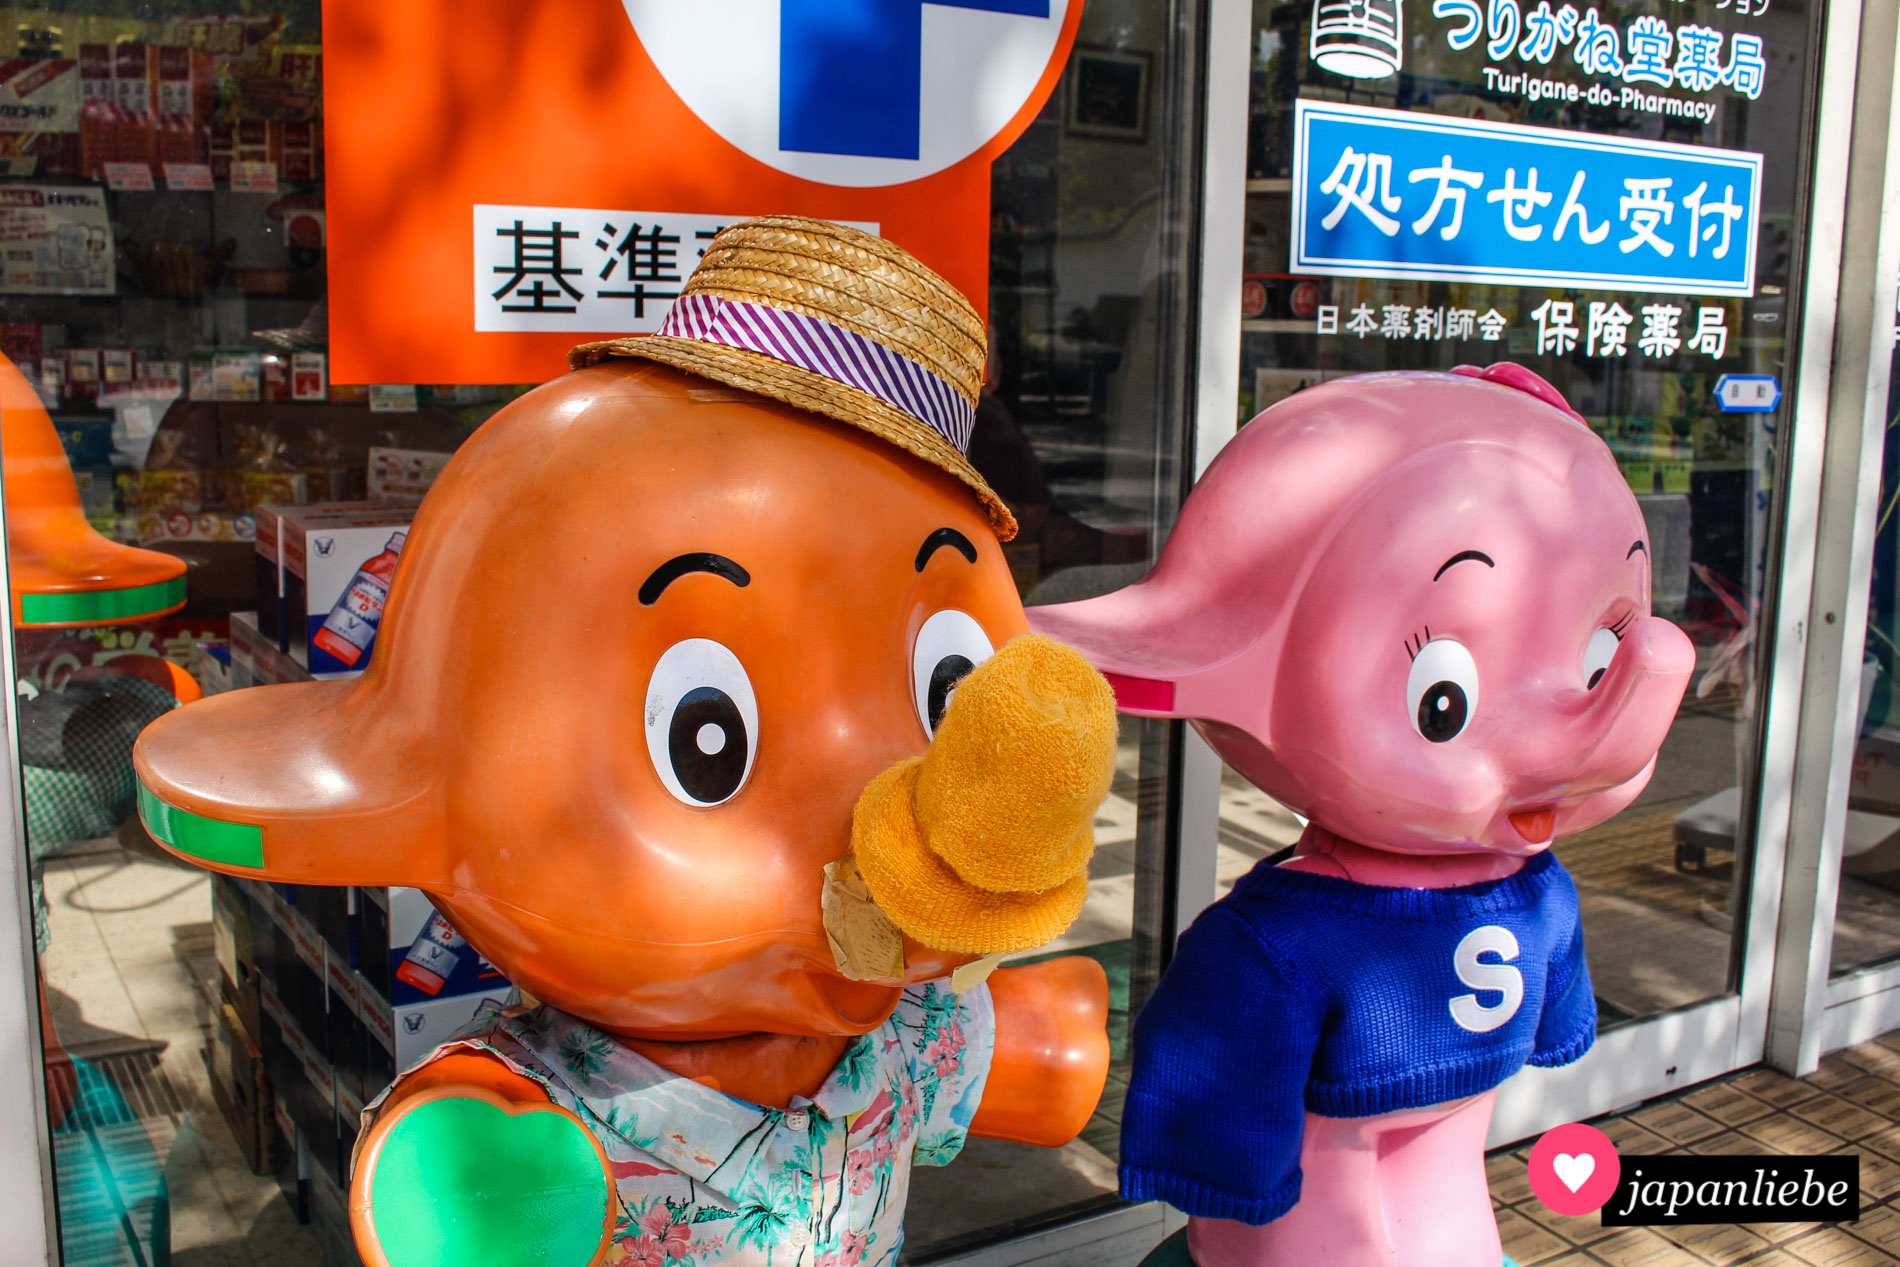 Sato-chan und Satoko-chan sind die inoffiziellen Apotheken-Maskottchen in Japan.